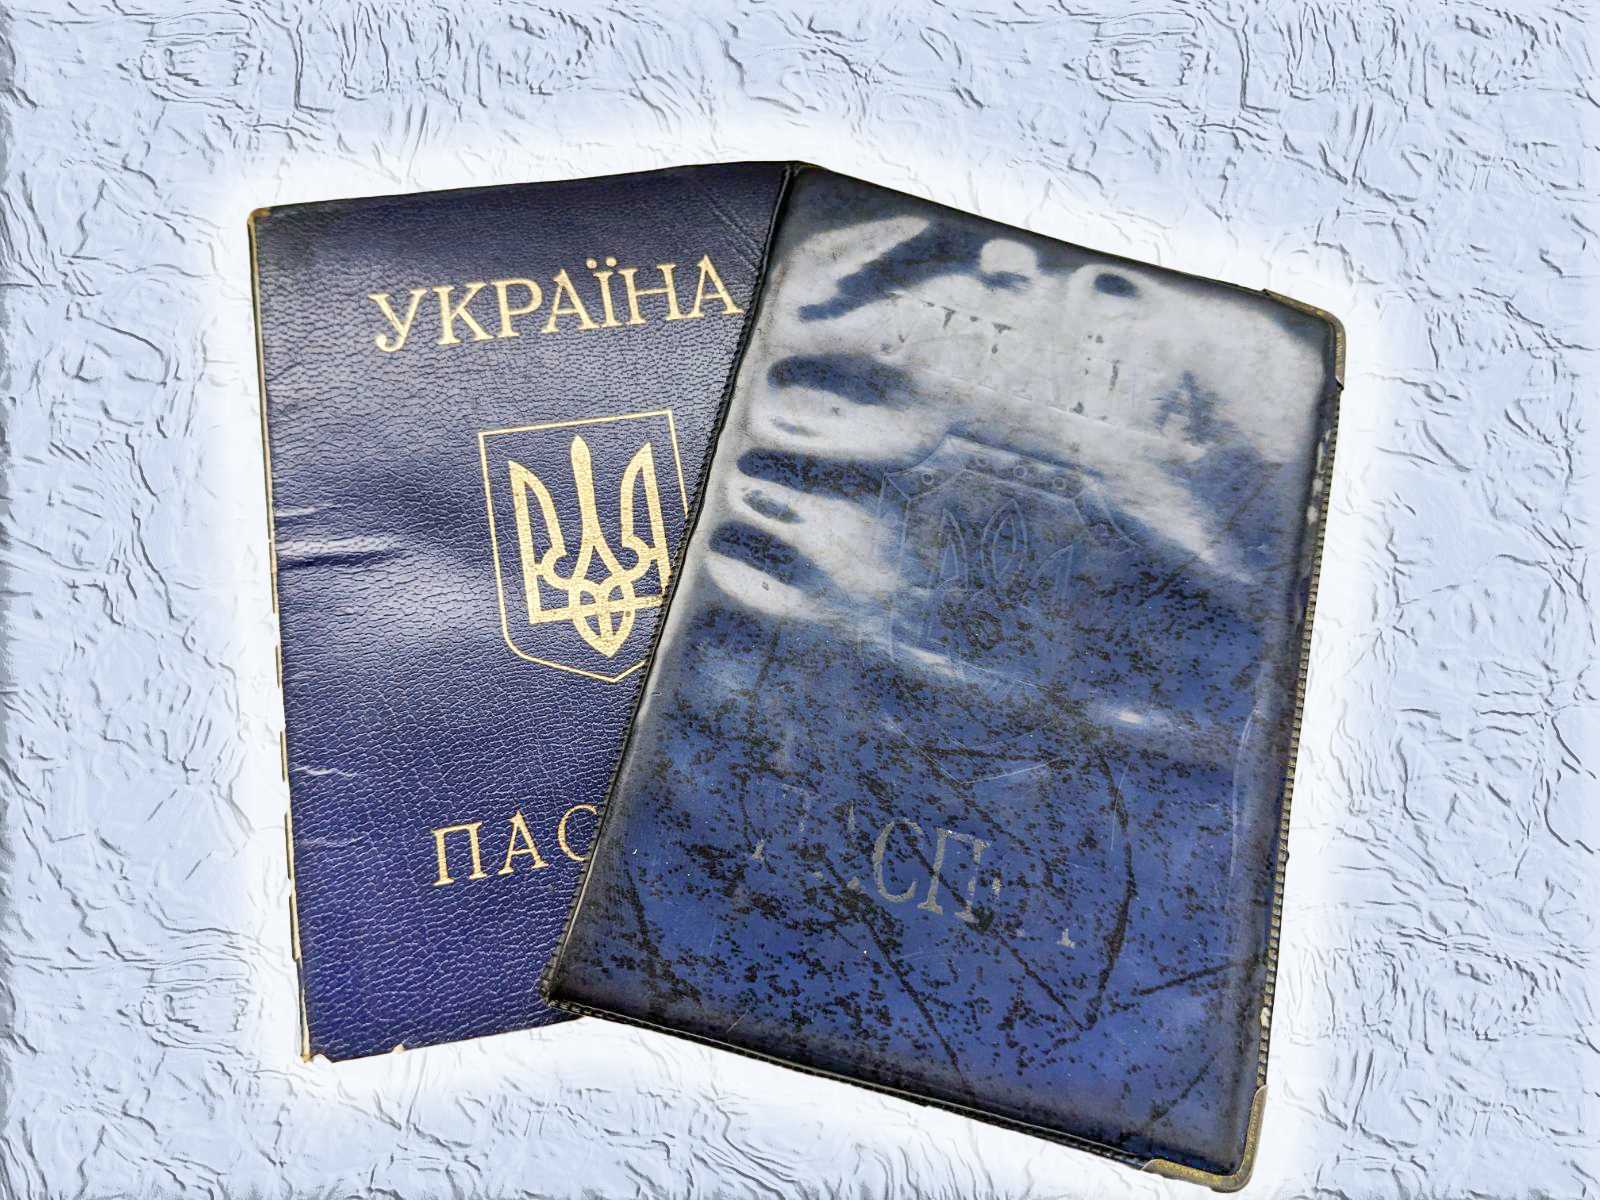 Російська мова в українських паспортах: Кремінь звернувся до Кабміну